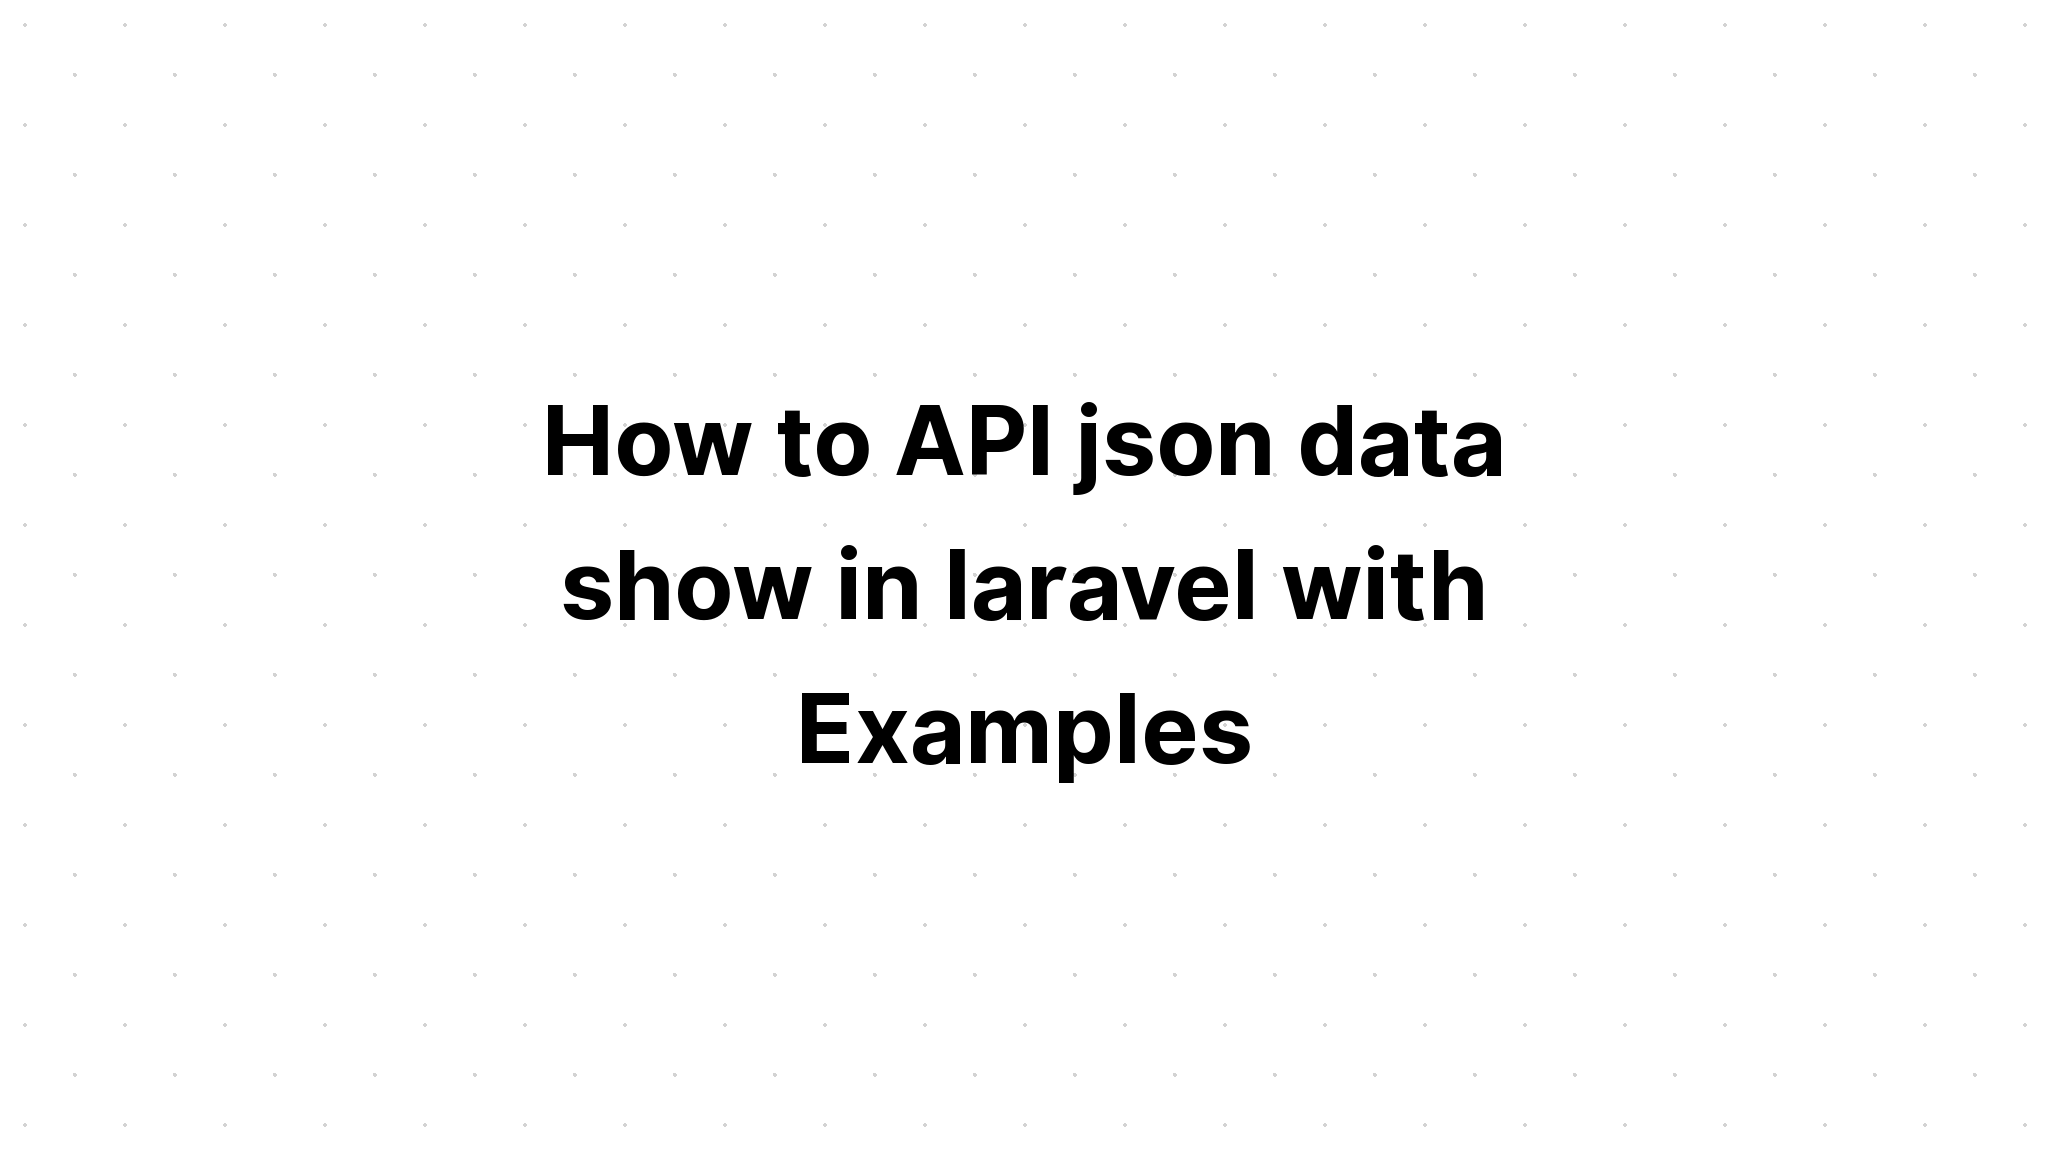 Cách hiển thị dữ liệu API json trong laravel với các ví dụ